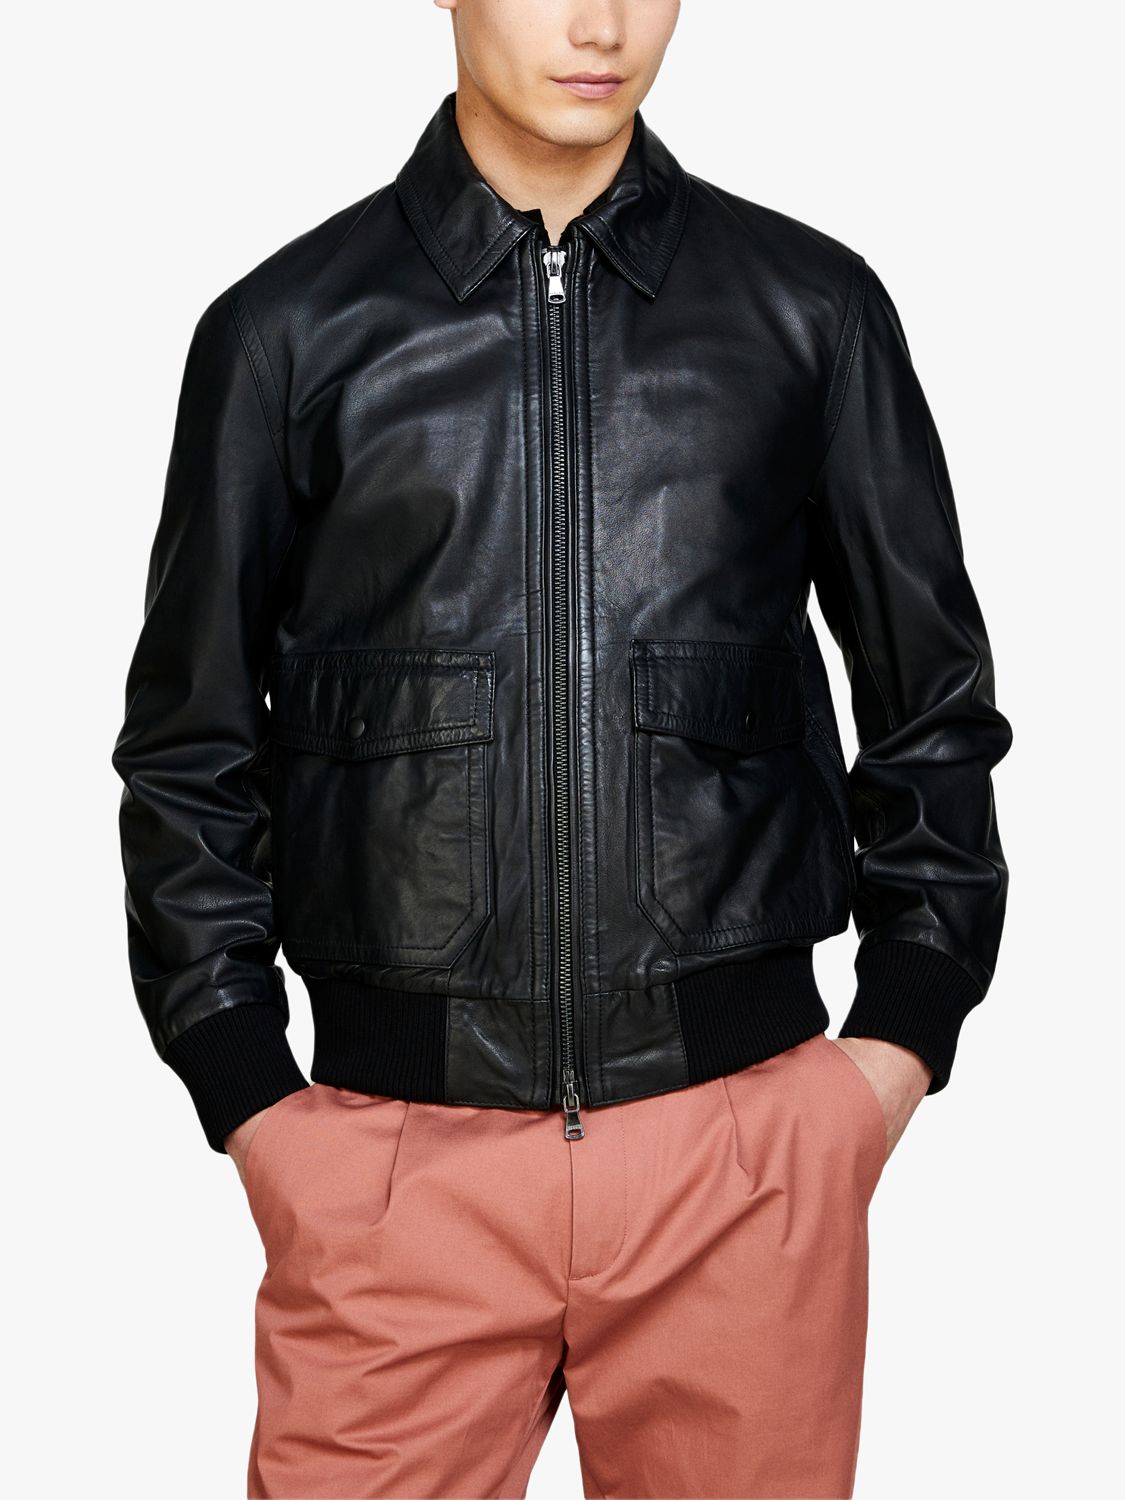 SISLEY Leather Slim Comfort Jacket, Black, 46